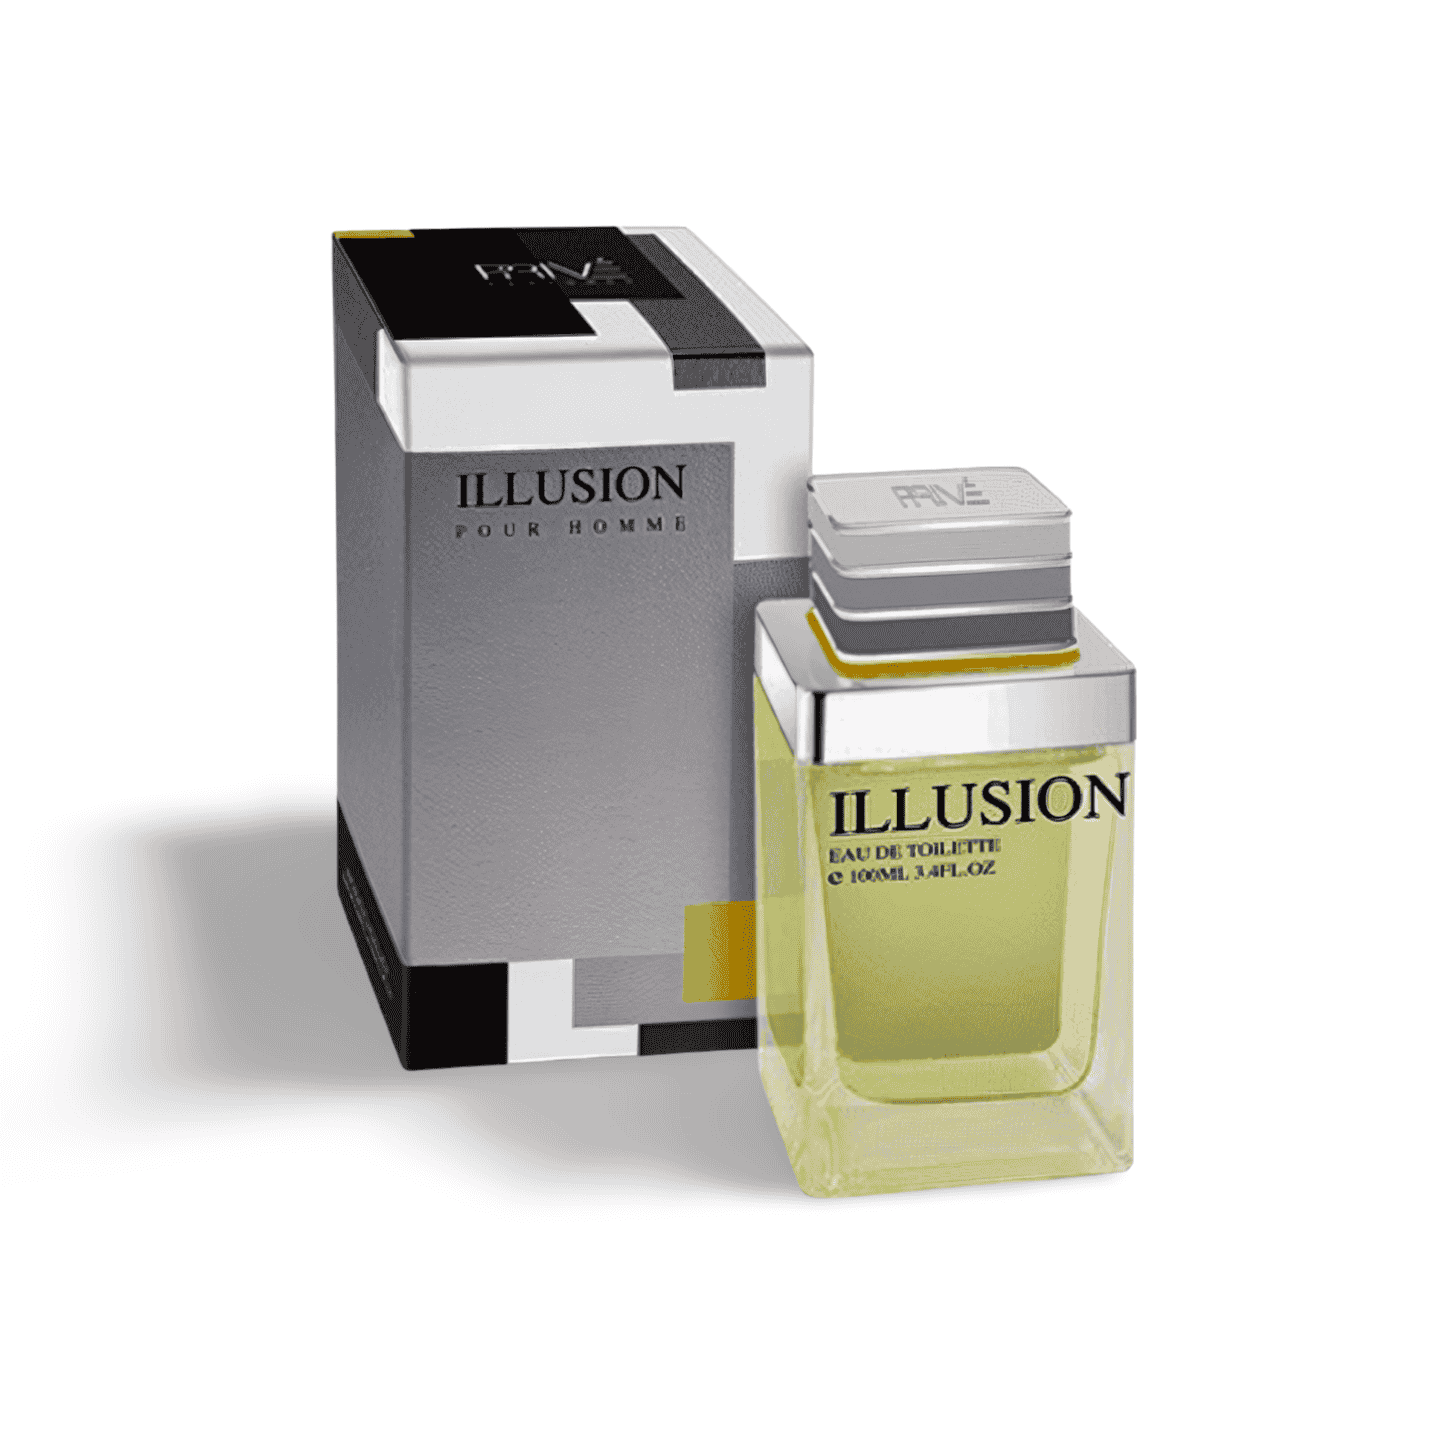 Illusion Men Perfume - Shop Online